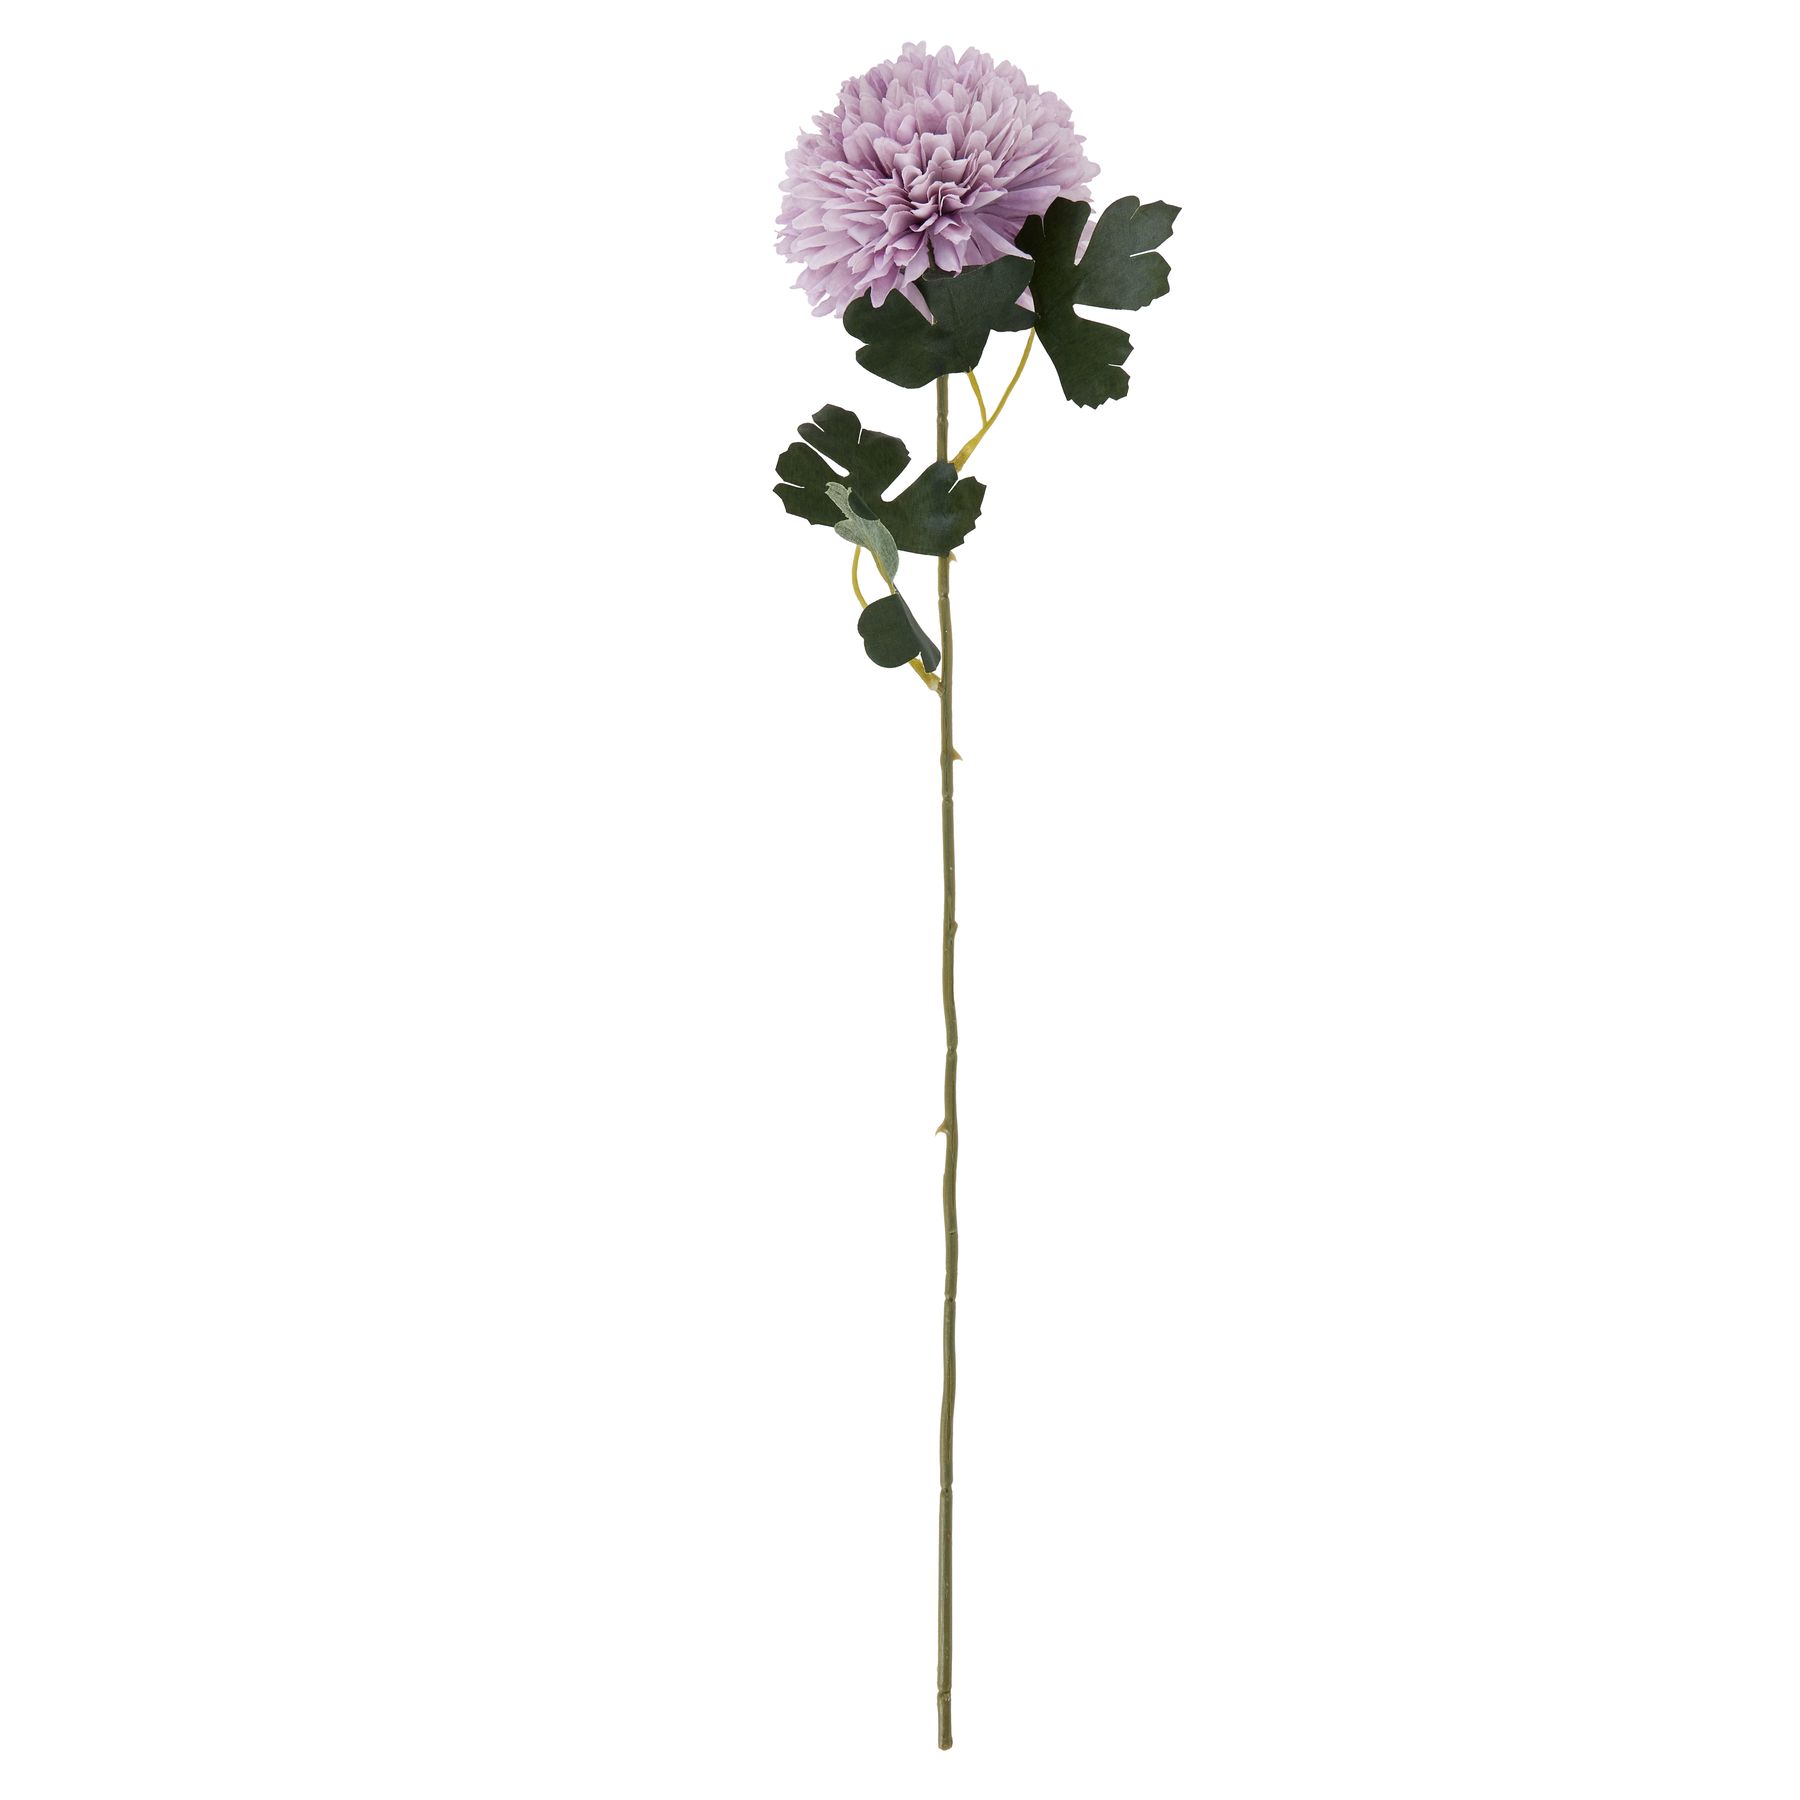 Light Purple Chrysanthemum - Image 4